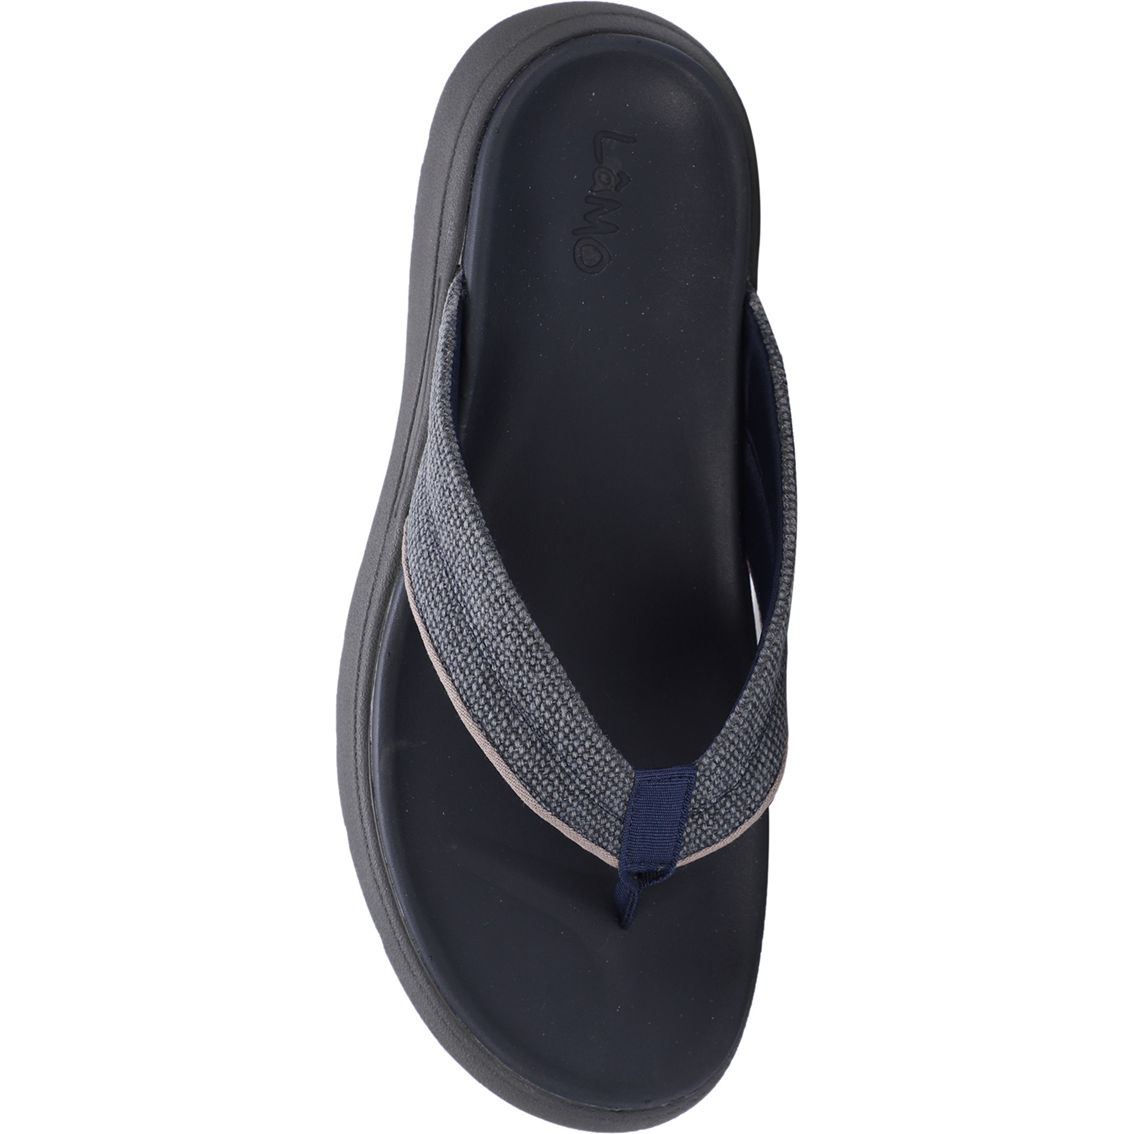 Lamo Lyle Comfort Flip Flop Sandals - Image 6 of 9